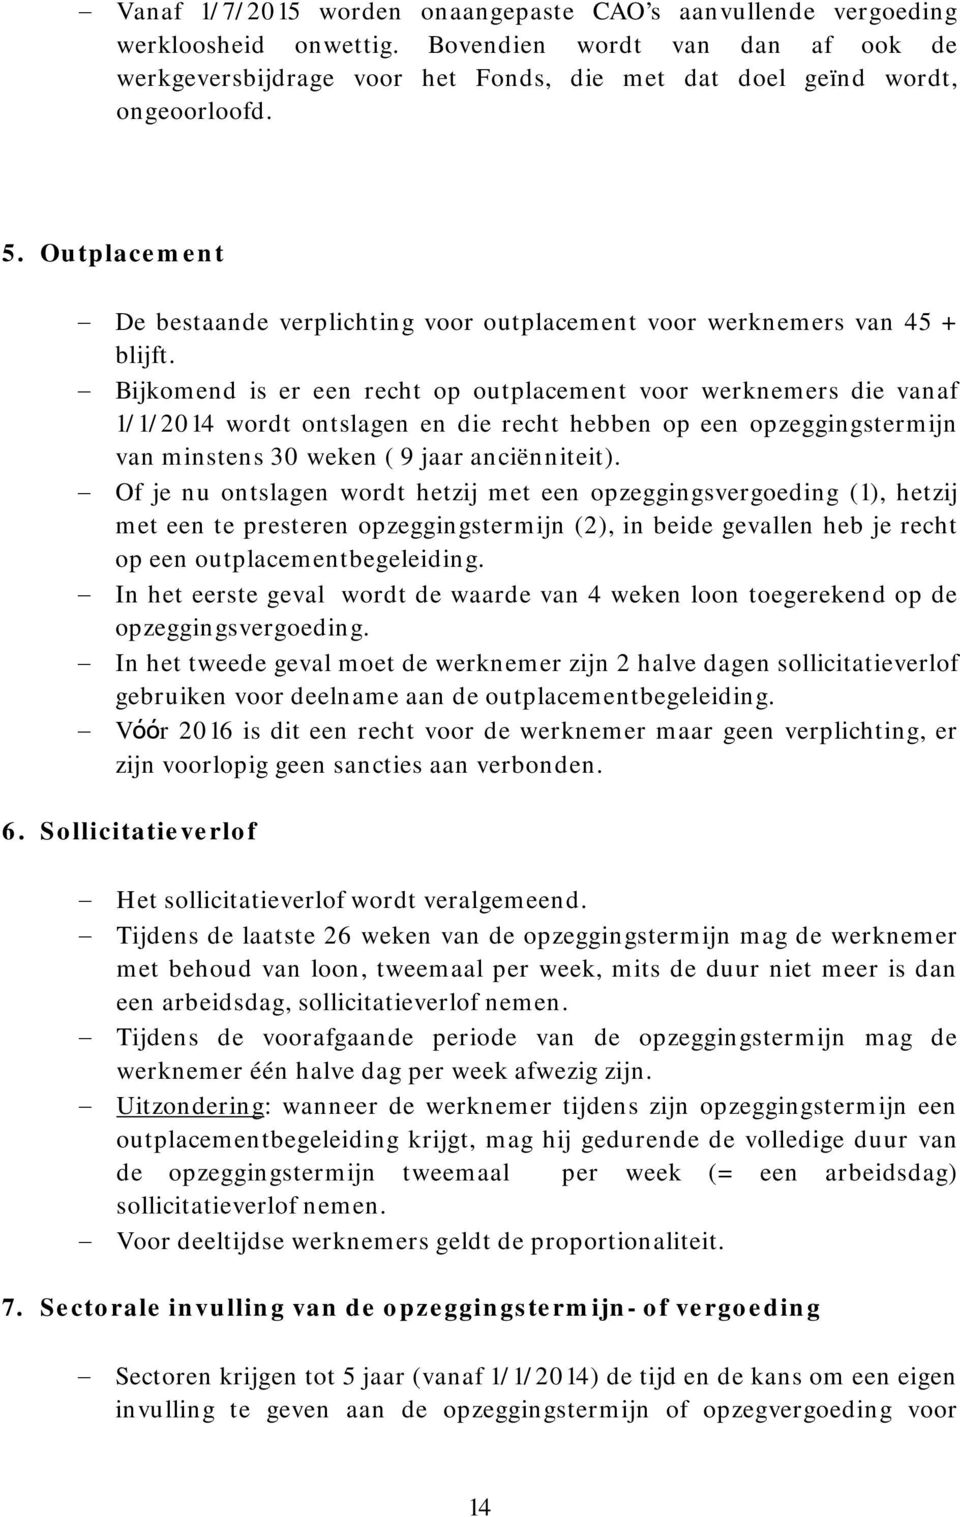 Bijkomend is er een recht op outplacement voor werknemers die vanaf 1/1/2014 wordt ontslagen en die recht hebben op een opzeggingstermijn van minstens 30 weken ( 9 jaar anciënniteit).